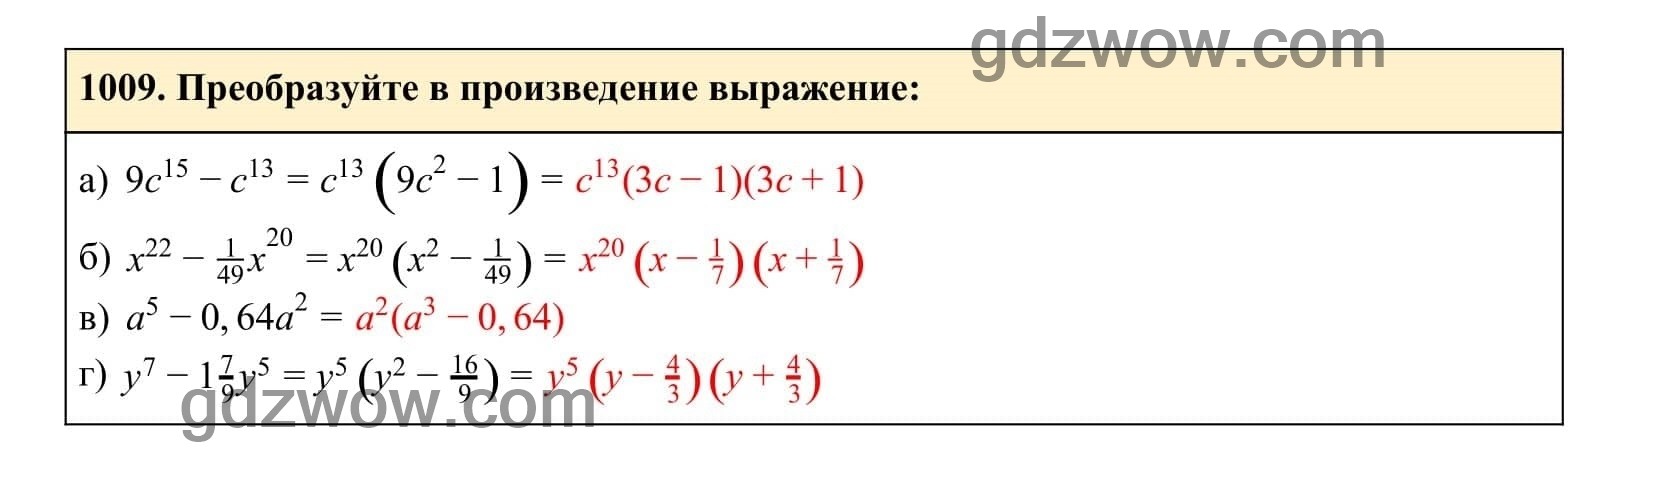 Упражнение 1009 - ГДЗ по Алгебре 7 класс Учебник Макарычев (решебник) - GDZwow